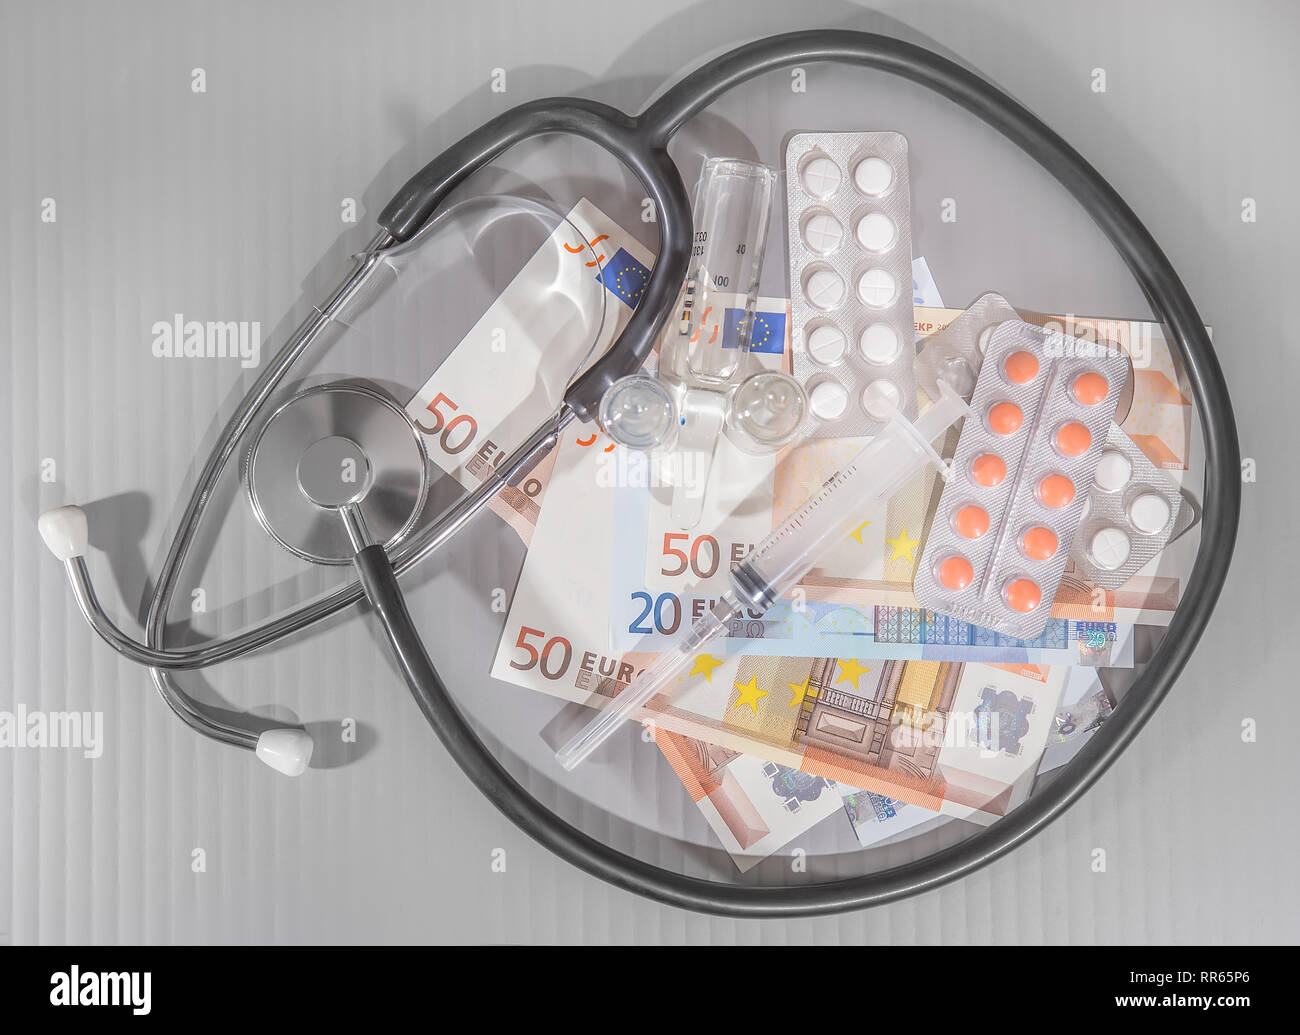 Billets médicaments seringue sur fond gris Banque D'Images